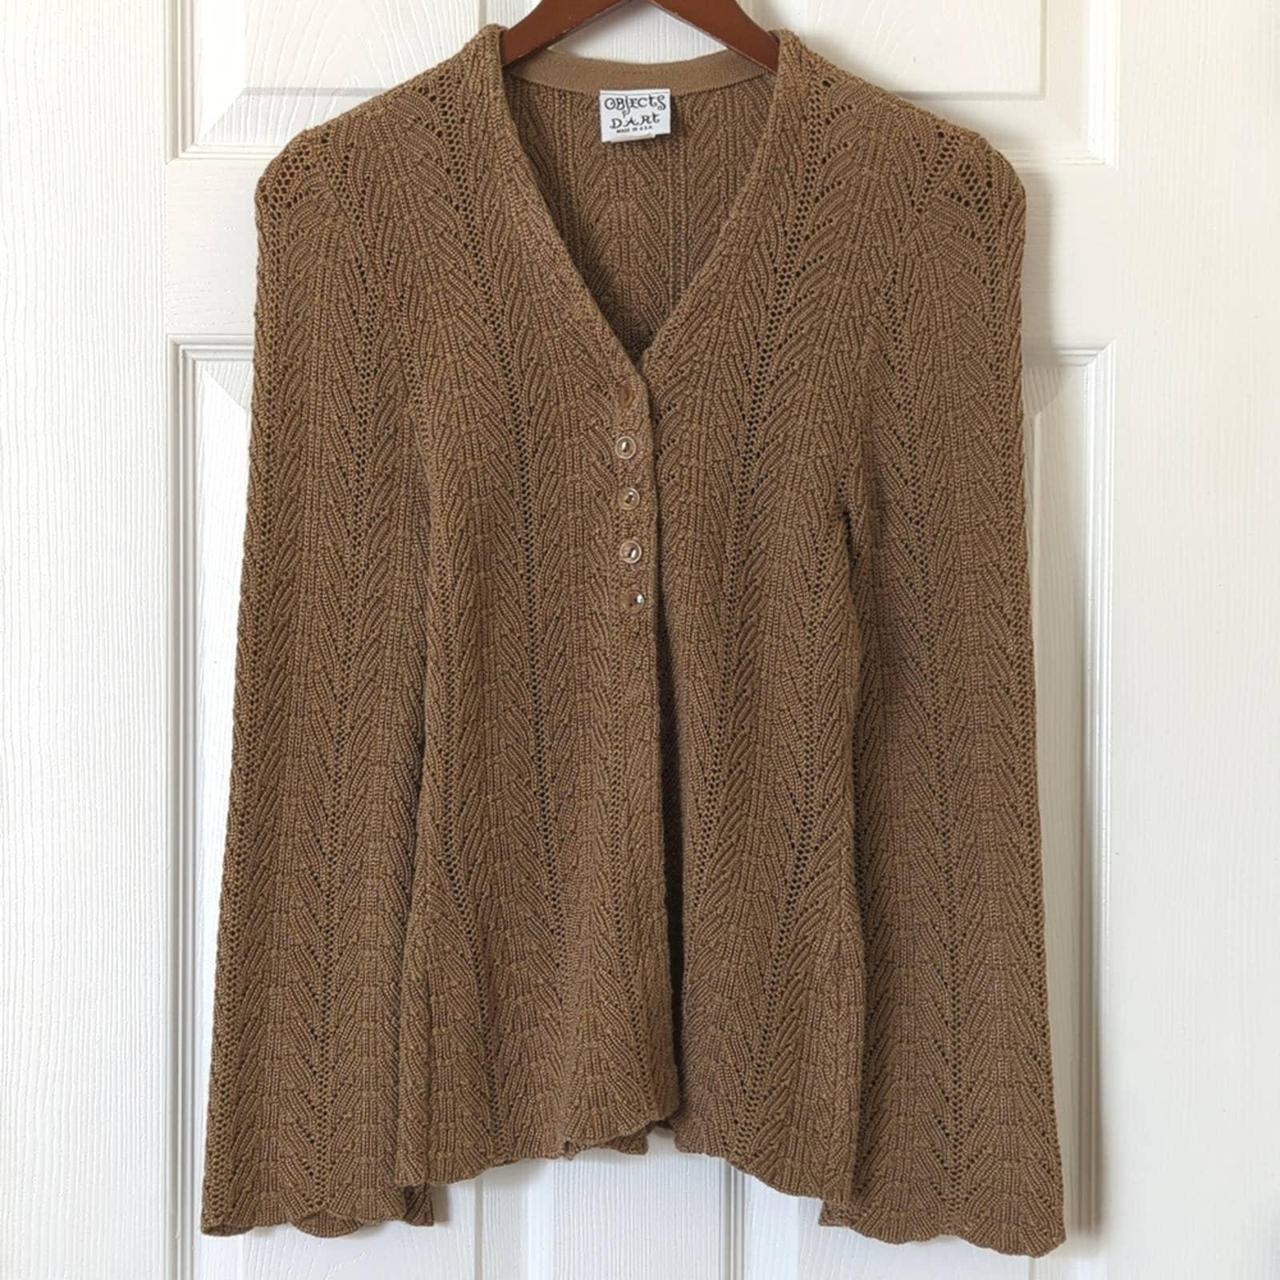 Gallery Cardigan Sweater - Tan